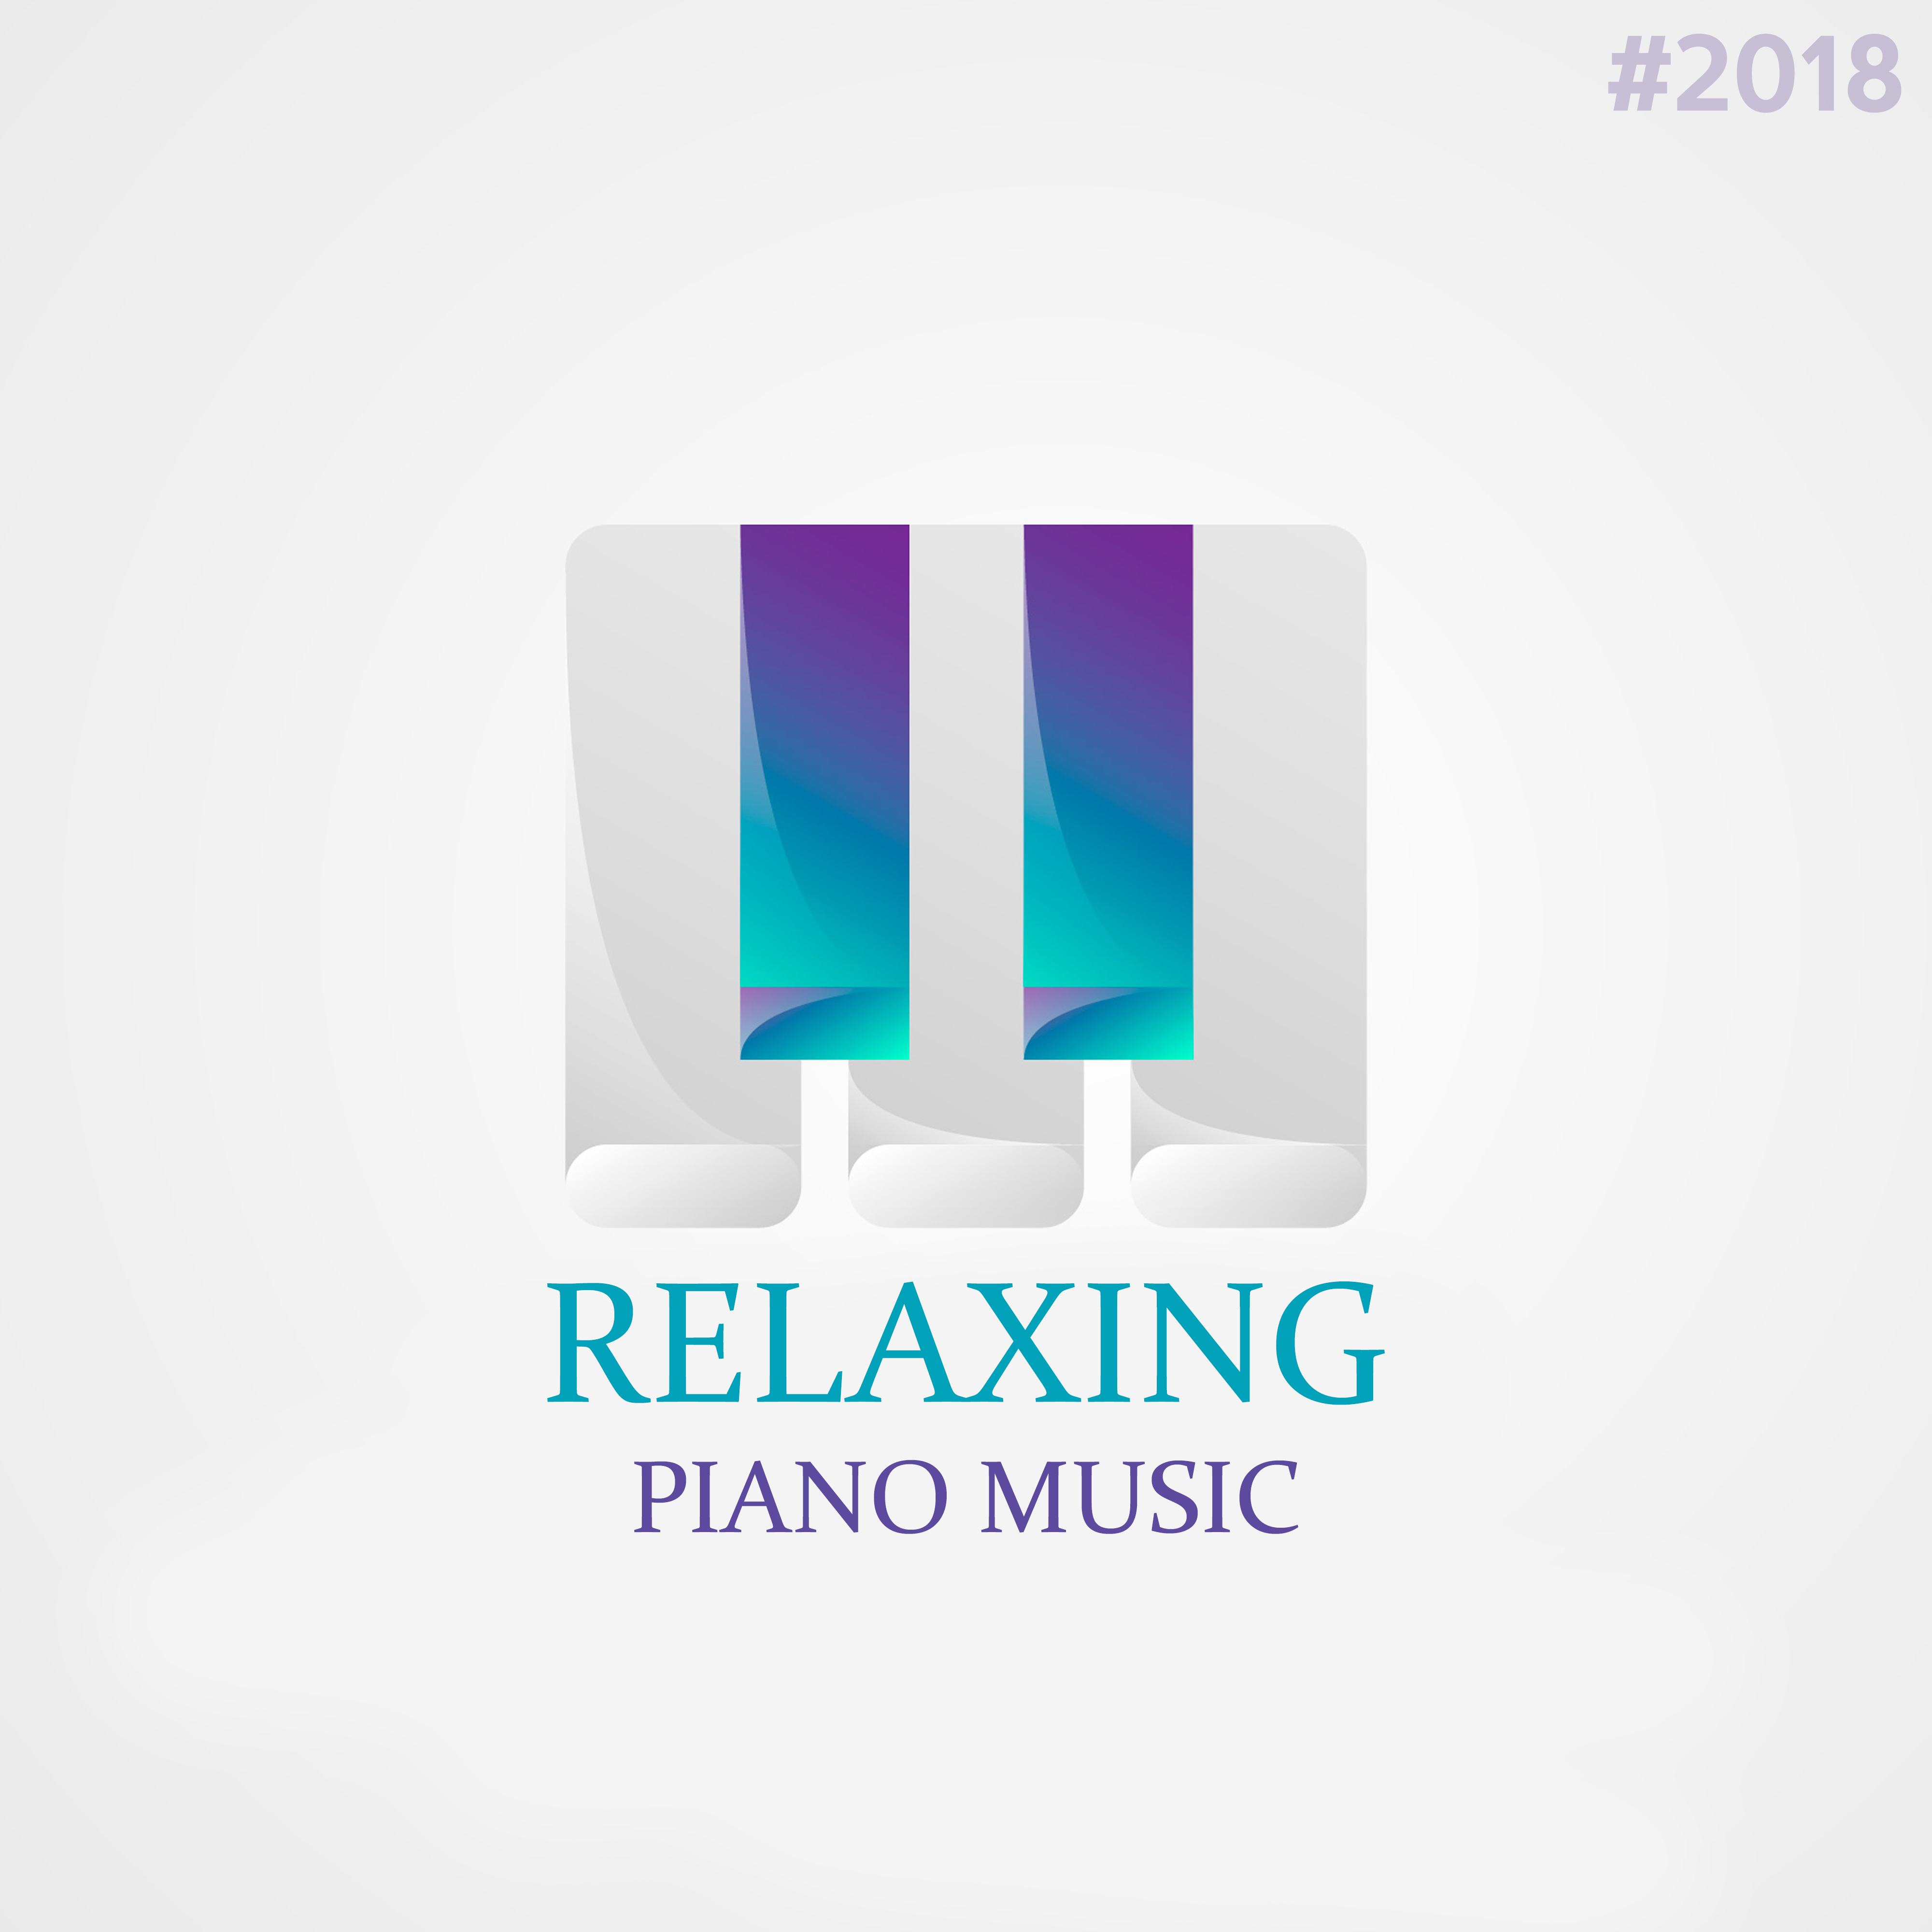 #2018 Relaxing Piano Music